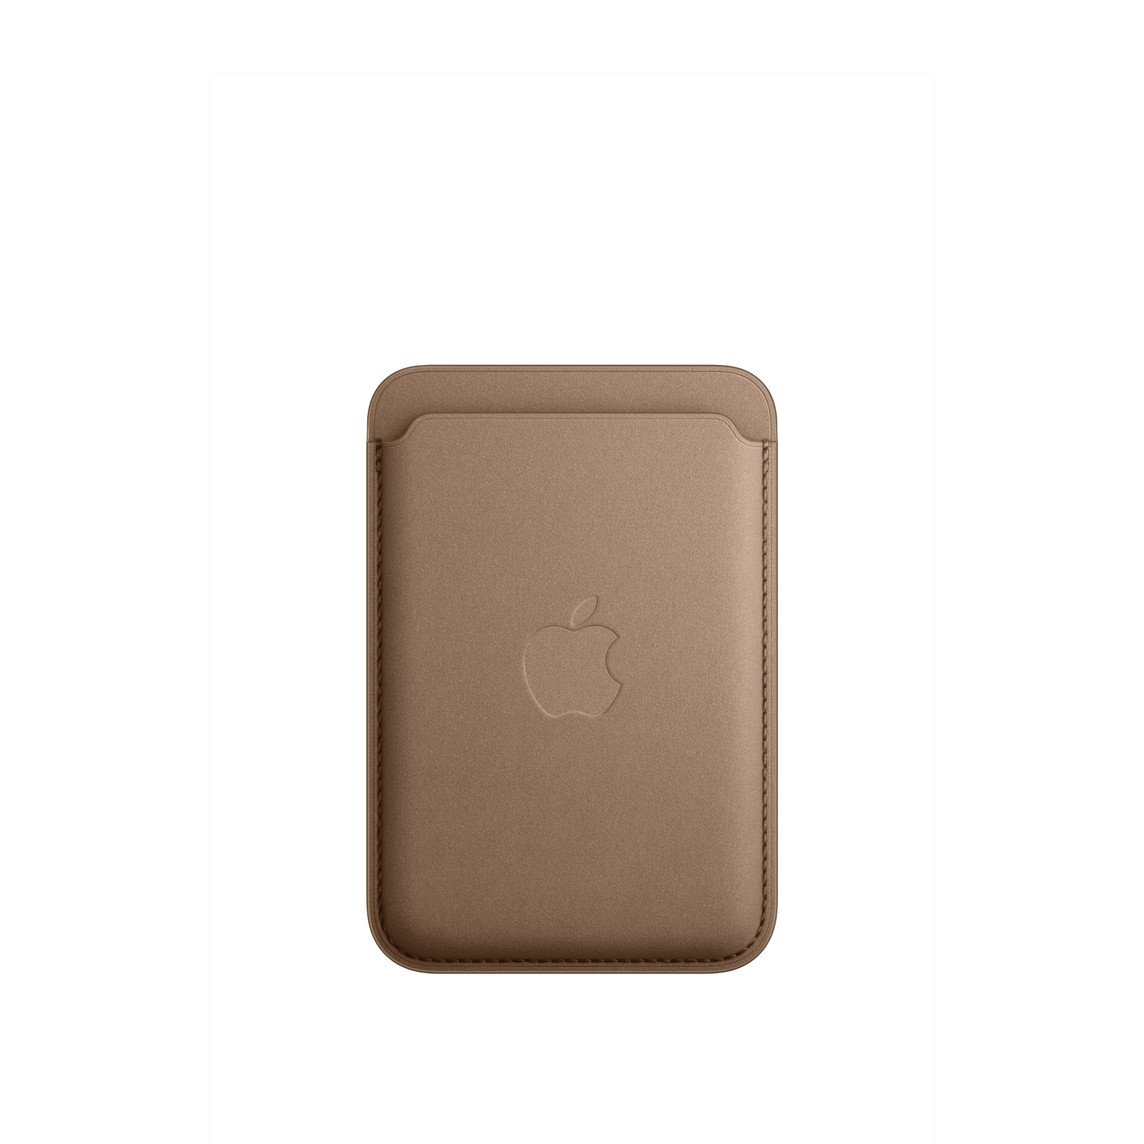 Vista frontal da Carteira em tecido FineWoven com MagSafe para iPhone em Castanho-toupeira, ranhura do cartão no topo, com logótipo Apple integrado no centro.